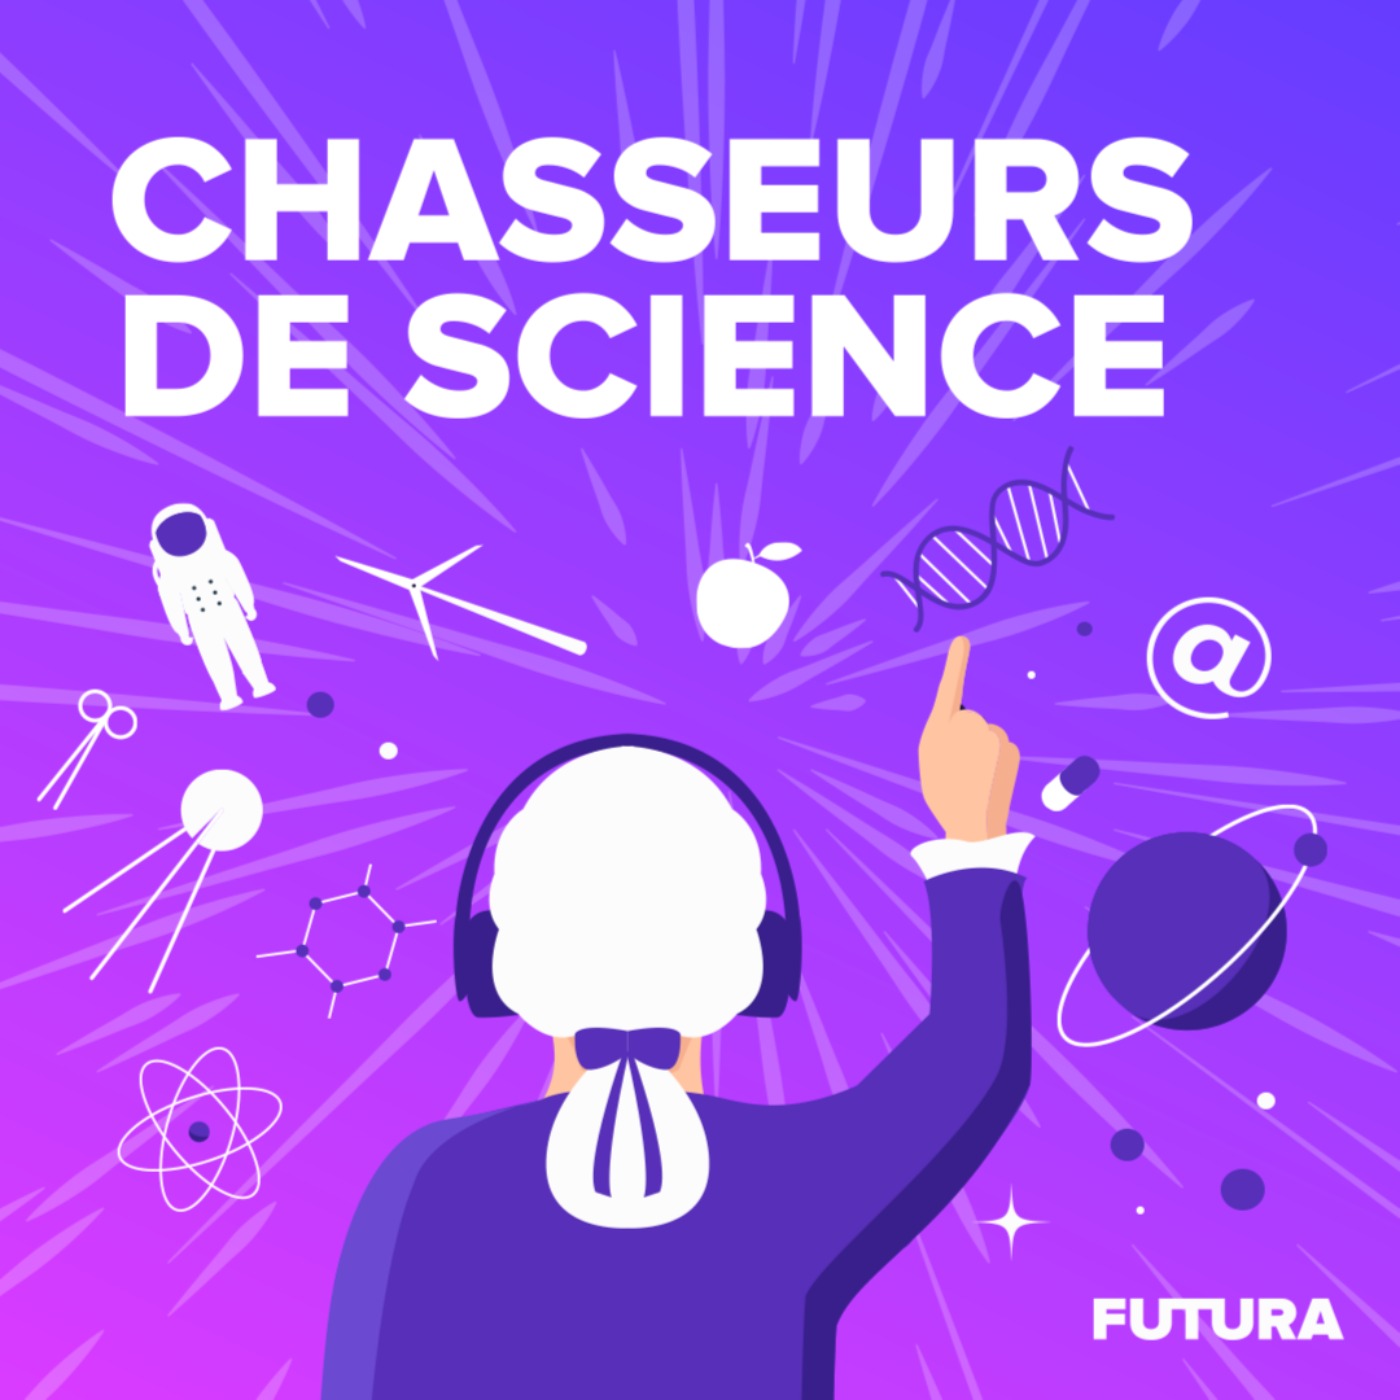 Chasseurs de science:Futura